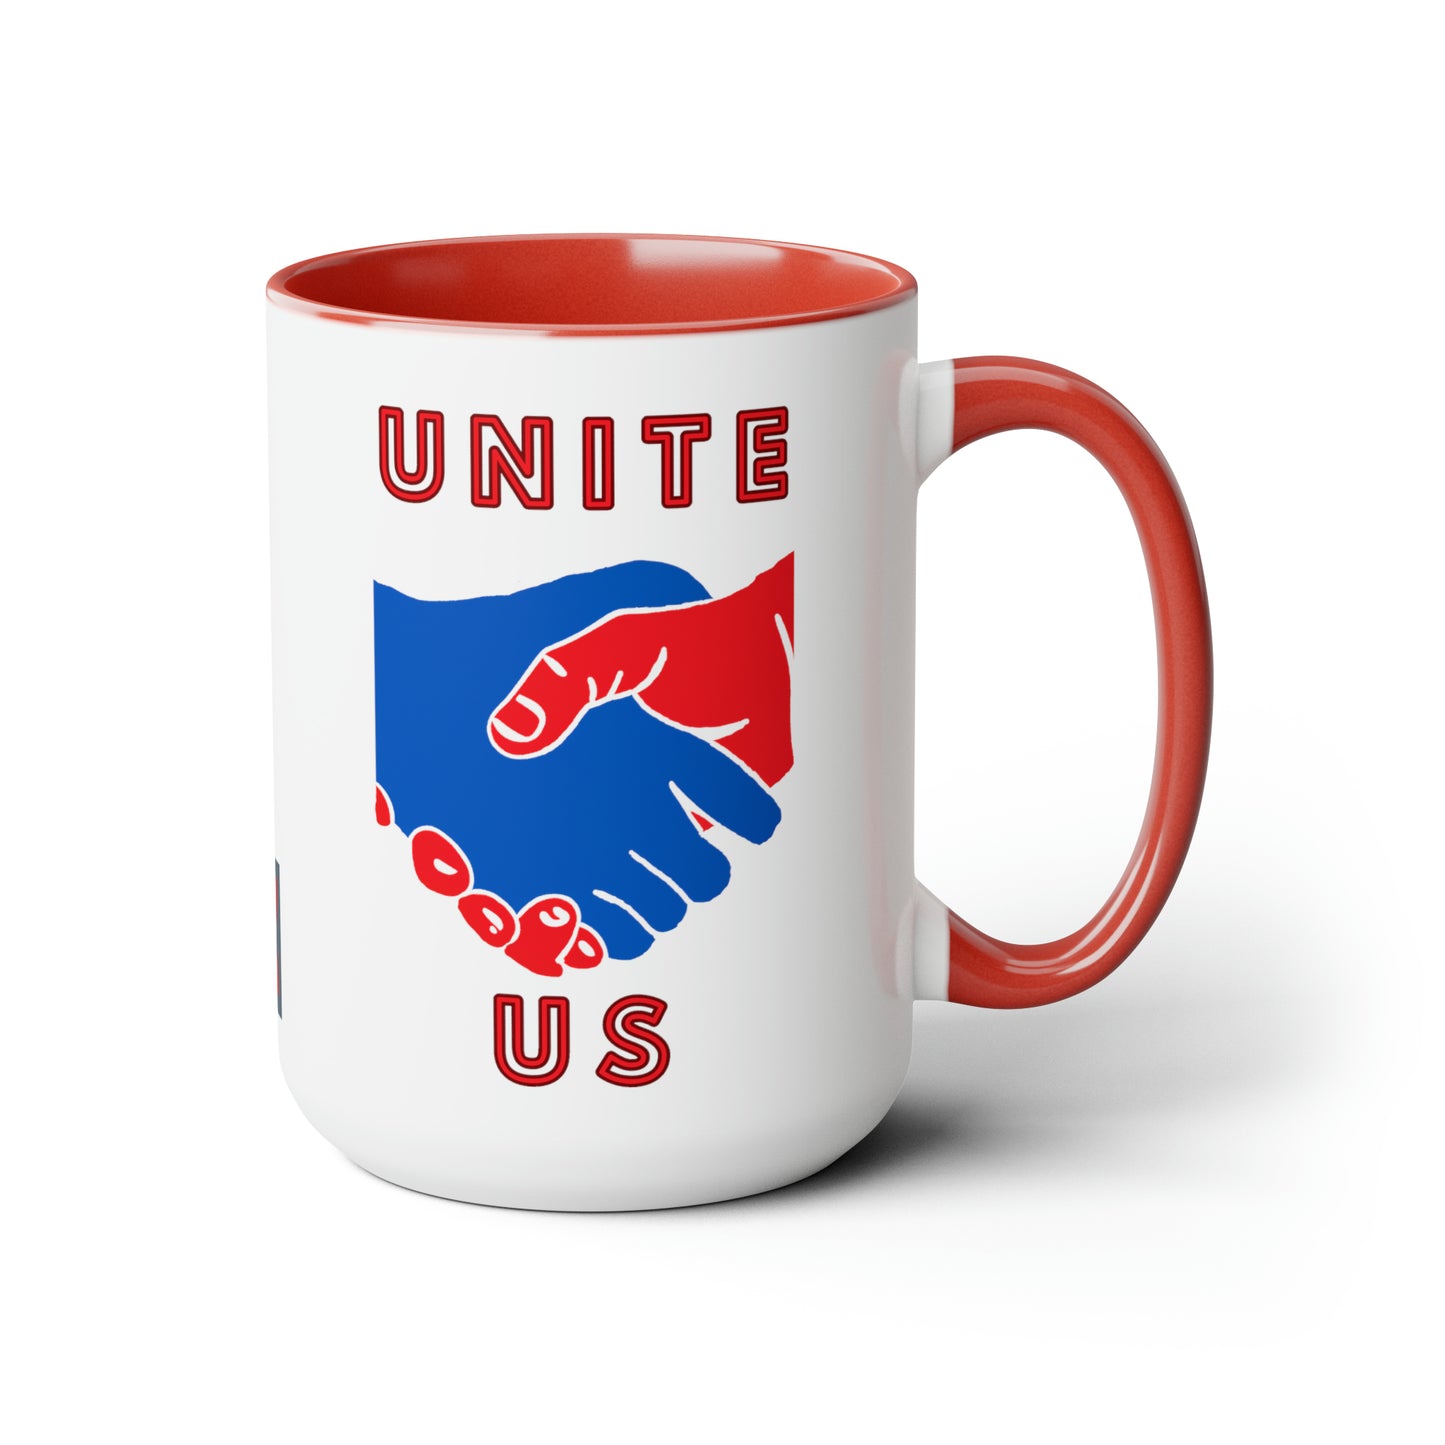 UNITE US 15 oz Coffee Mug Right Hand View